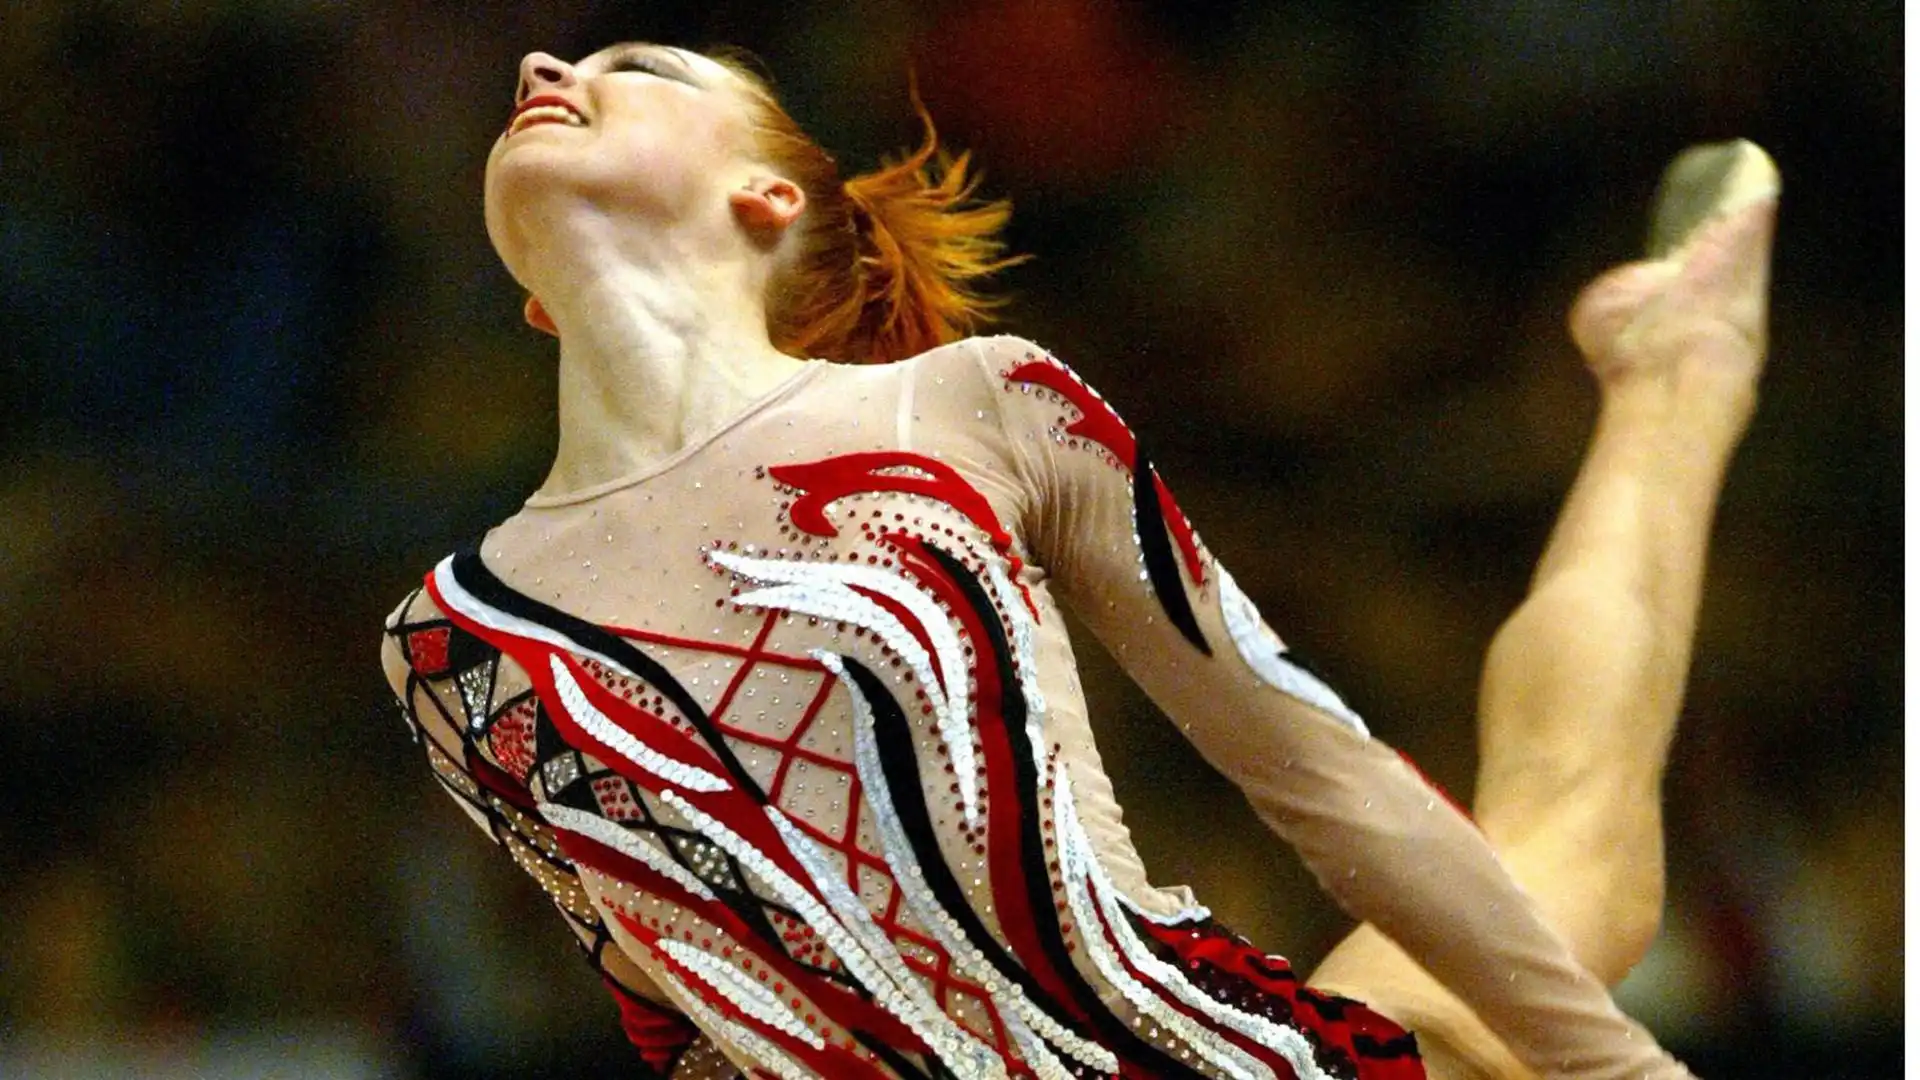 Natalia ha messo all'asta online la sua medaglia d'oro a squadre All-Around vinta ai Campionati mondiali di ginnastica ritmica del 2001 per sostenere l' esercito ucraino che all'epoca stava combattendo una guerra nel Donbass